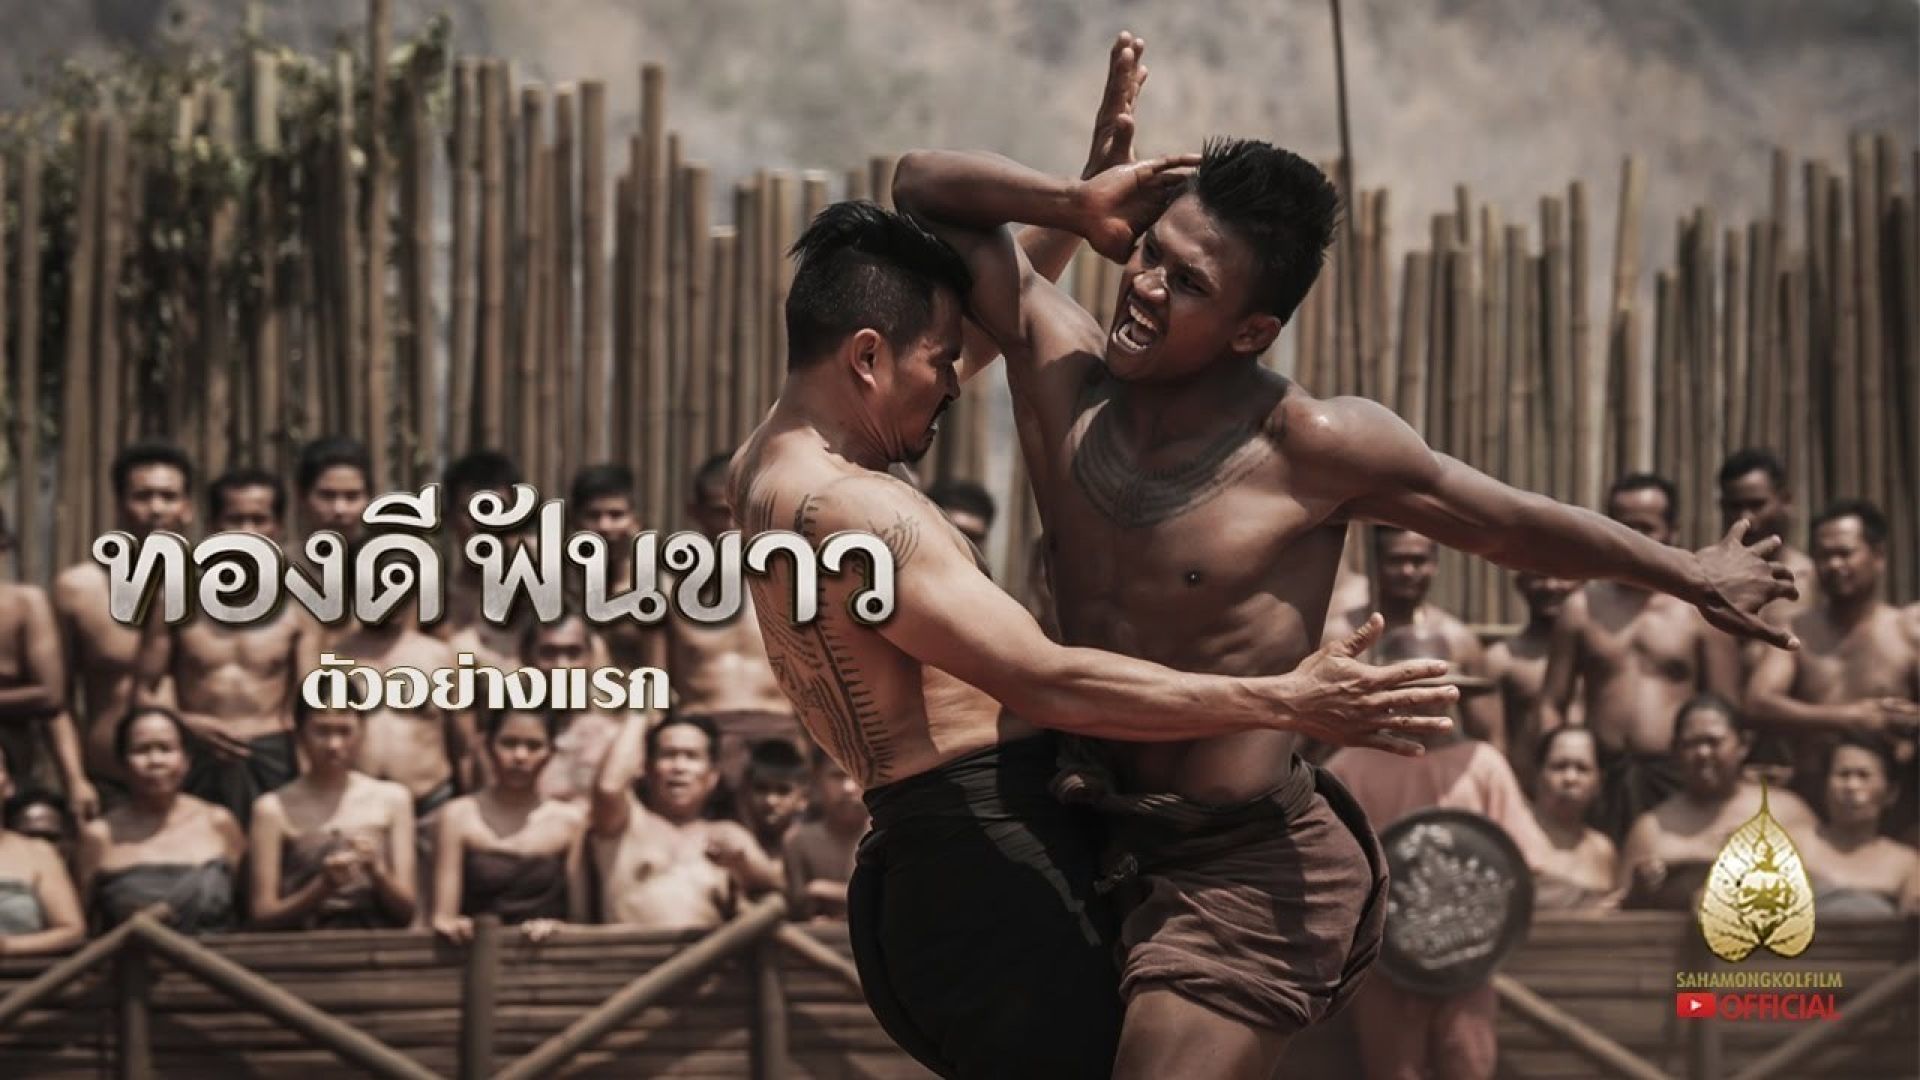 دانلود فیلم Thong Dee Fun Khao 2017